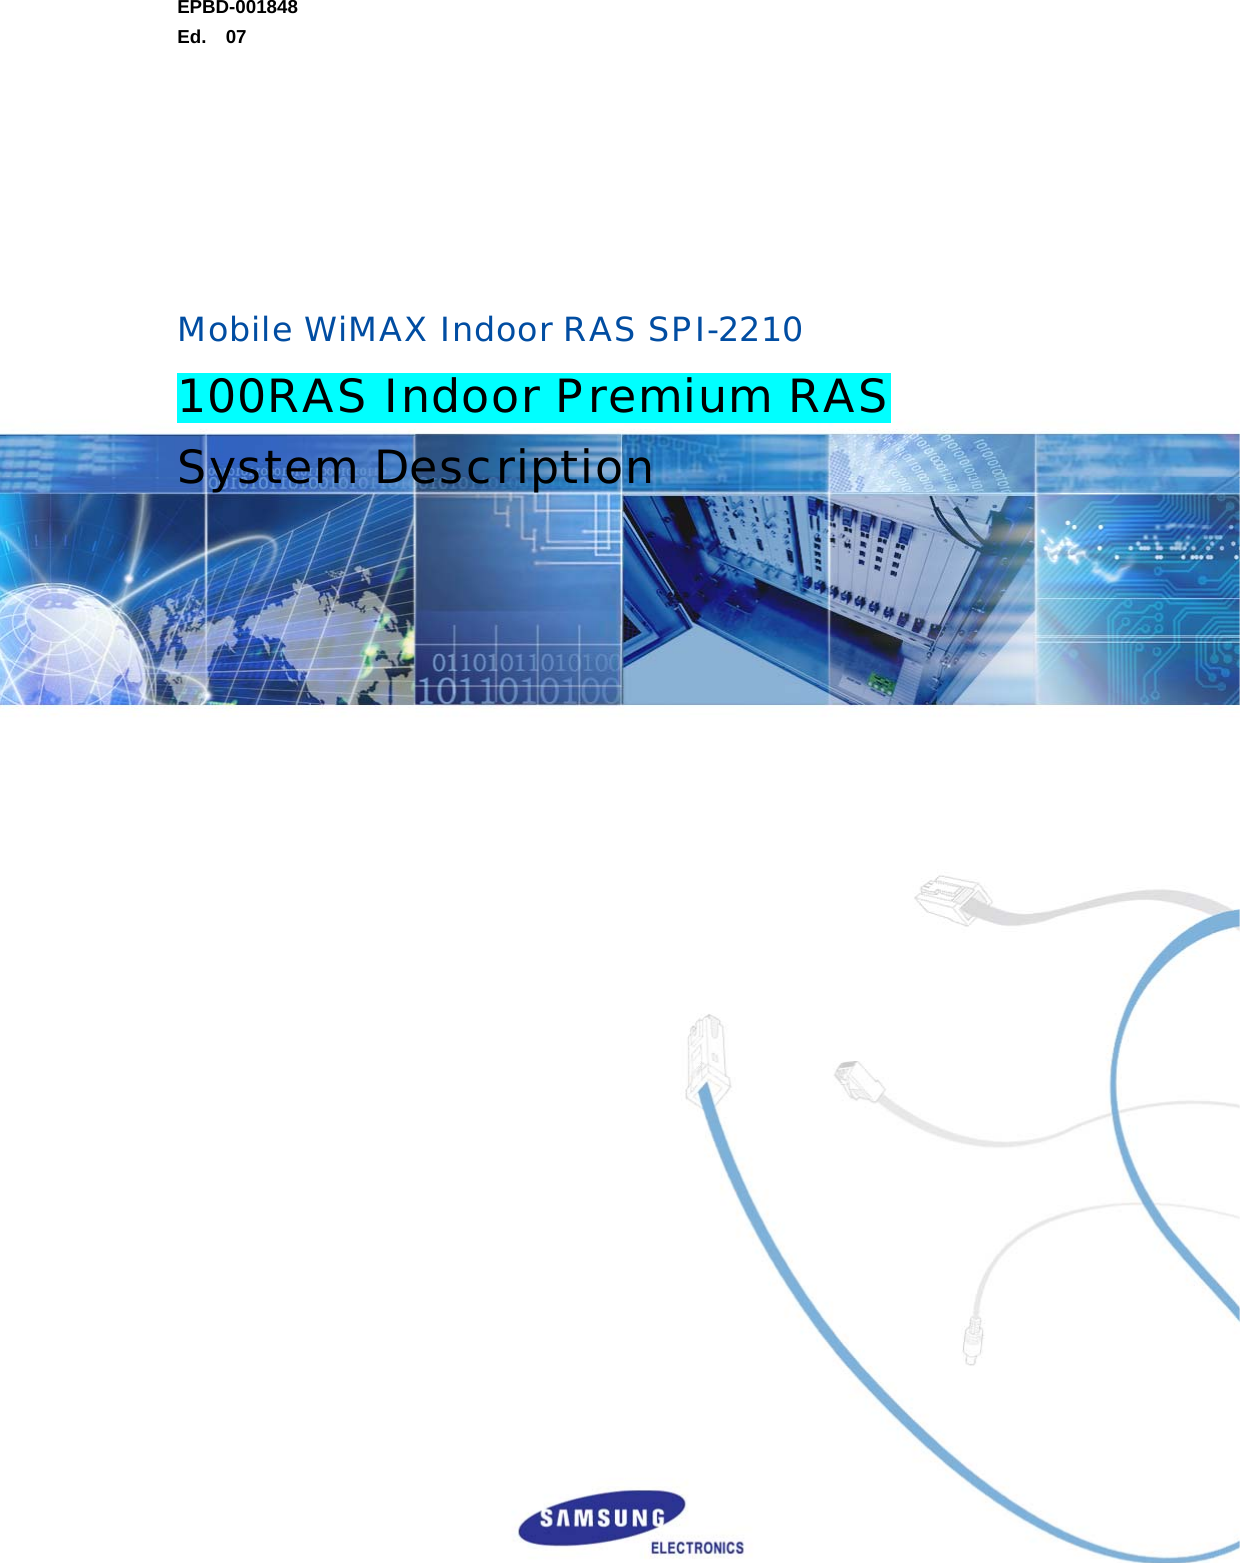 EPBD-001848 Ed.  07          Mobile WiMAX Indoor RAS SPI-2210 100RAS Indoor Premium RAS System Description    